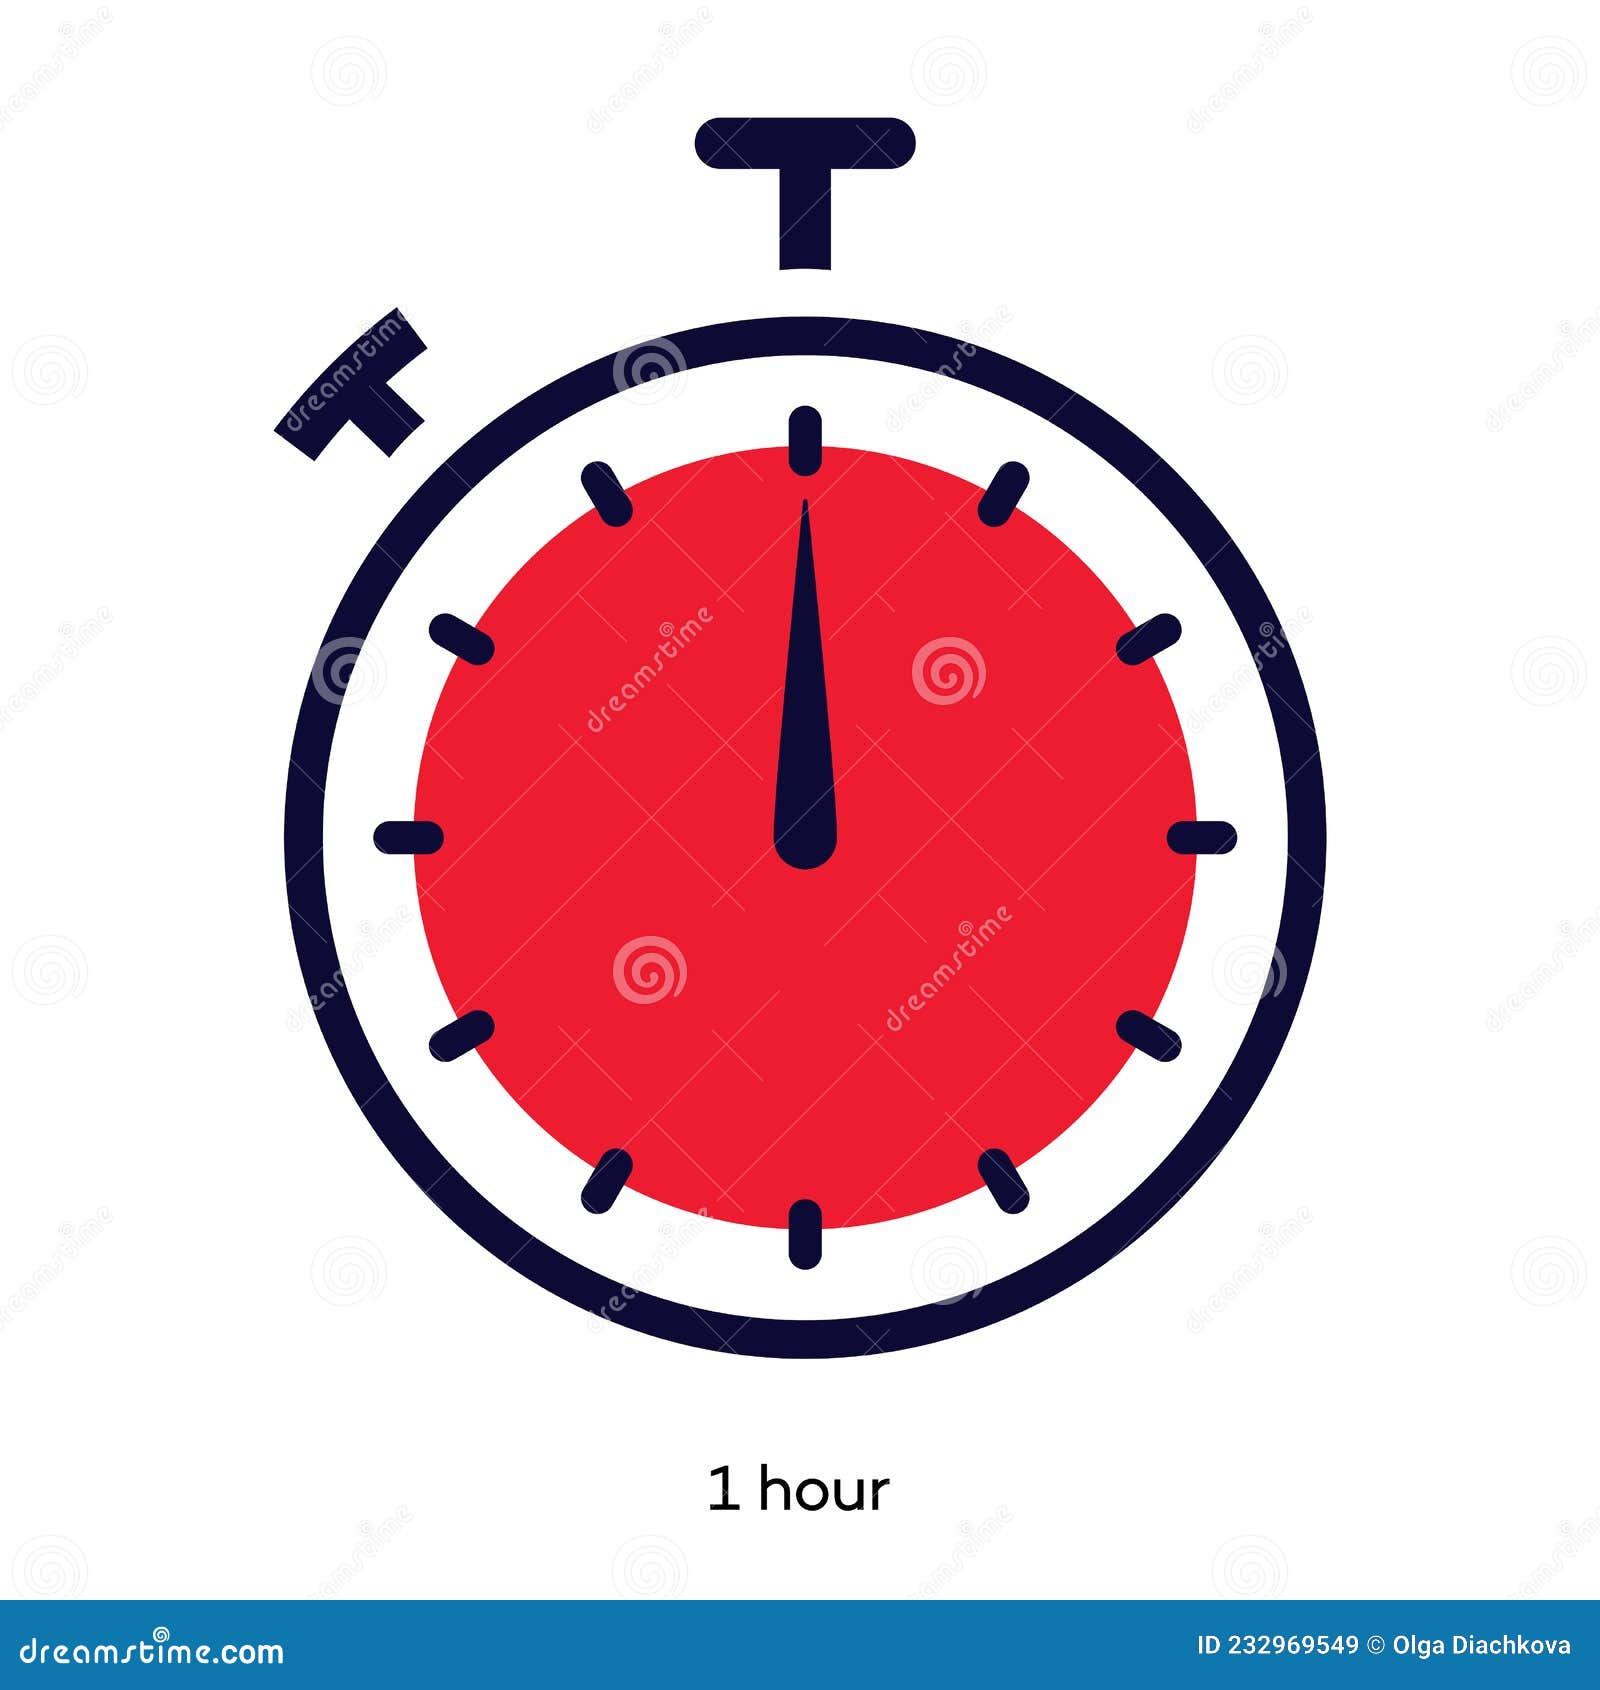 Biểu tượng đồng hồ đếm ngược 1 giờ là một công cụ hữu ích giúp bạn quản lý thời gian hiệu quả. Xem hình ảnh này để hiểu rõ hơn về cách sử dụng biểu tượng đồng hồ đếm ngược và áp dụng vào công việc và cuộc sống hàng ngày của bạn.